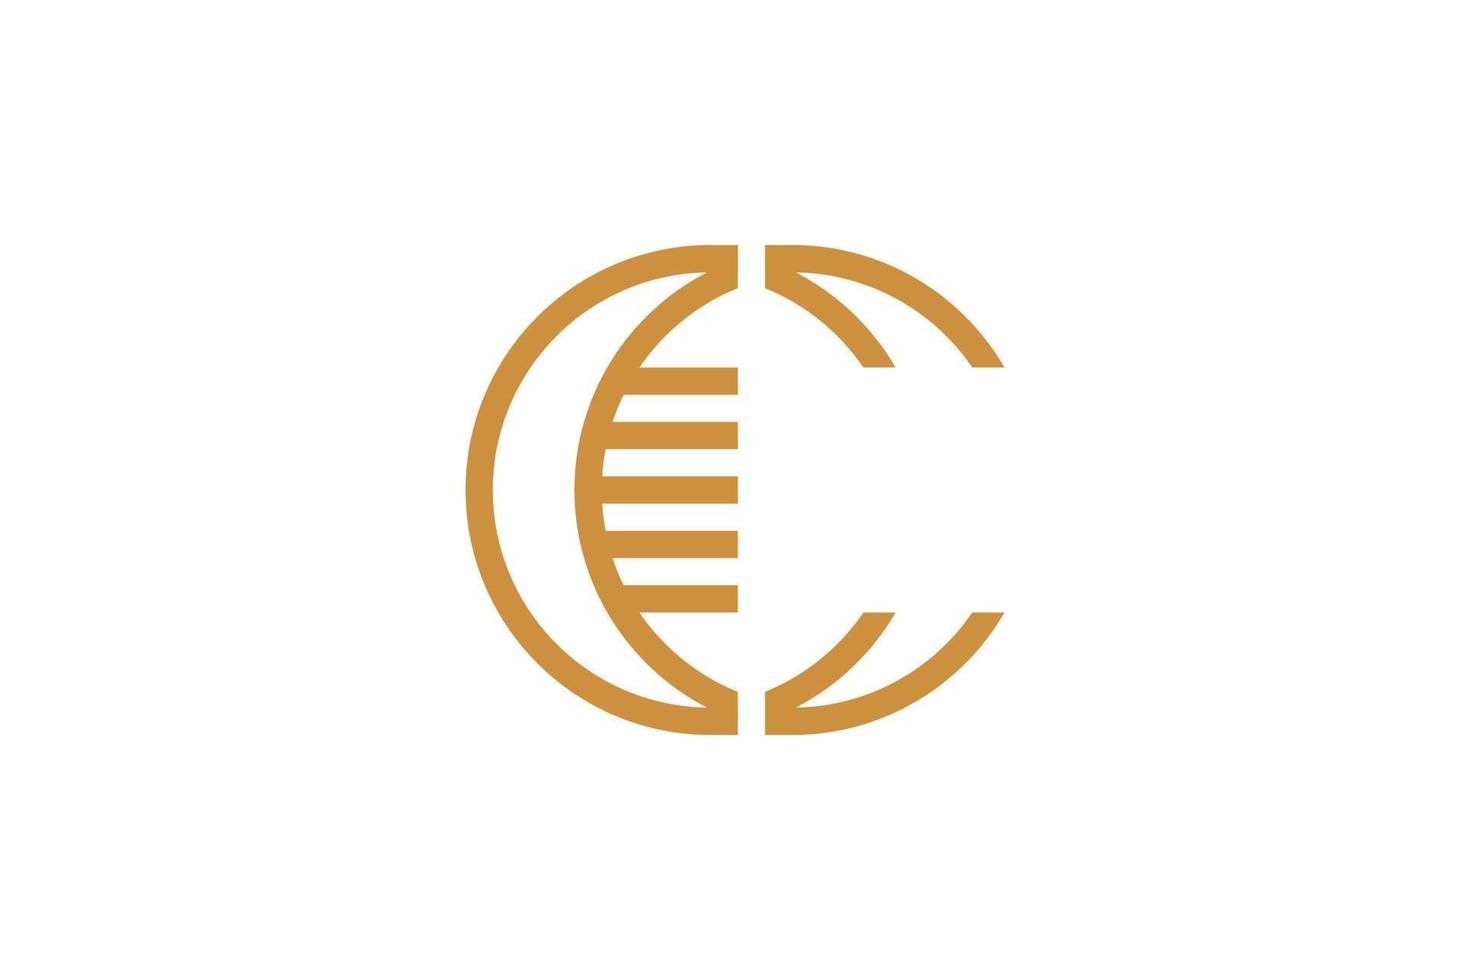 The Letter C Monoline Logo vector